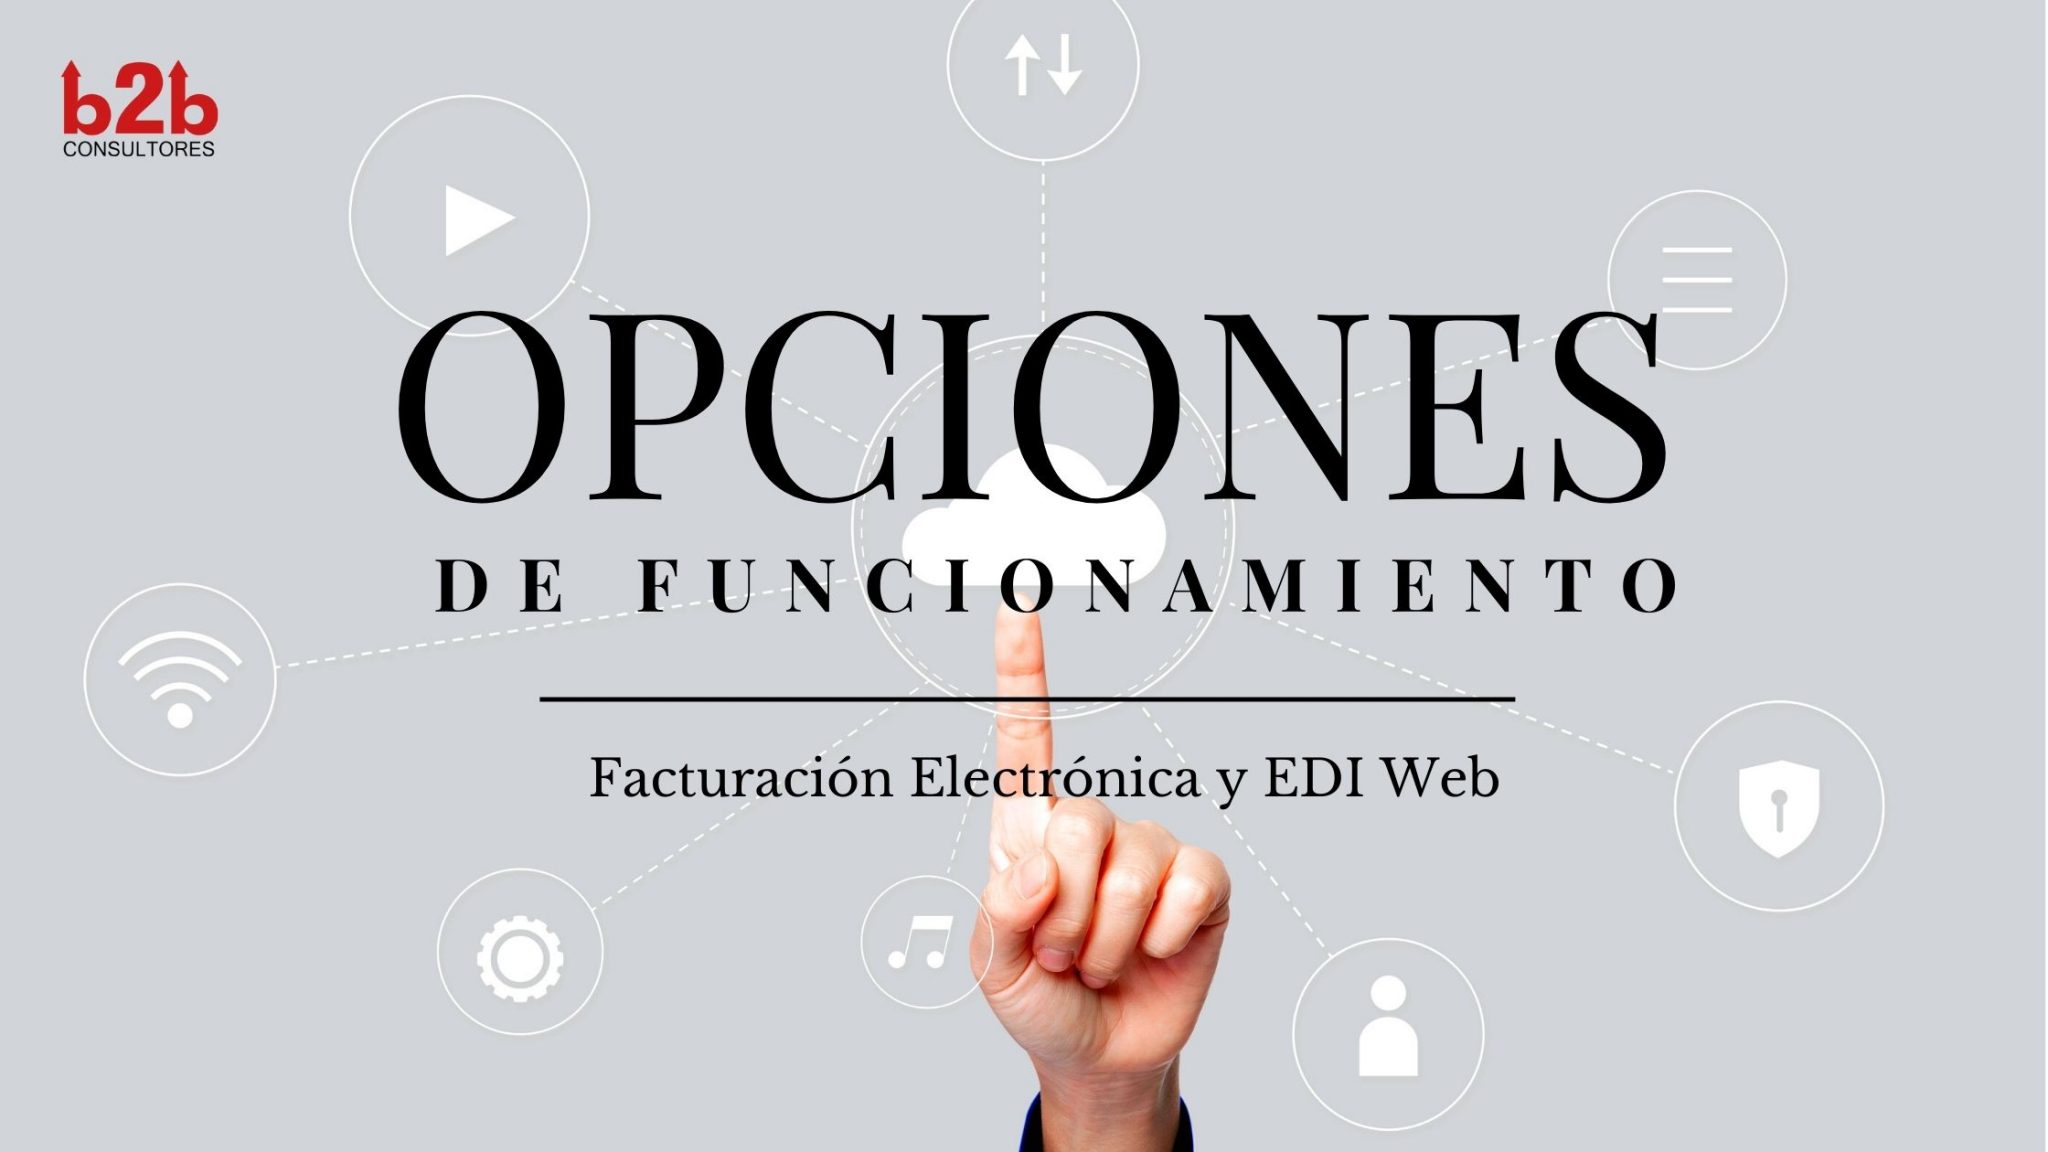 Funcionamiento EDI Web y Facturación Electrónica